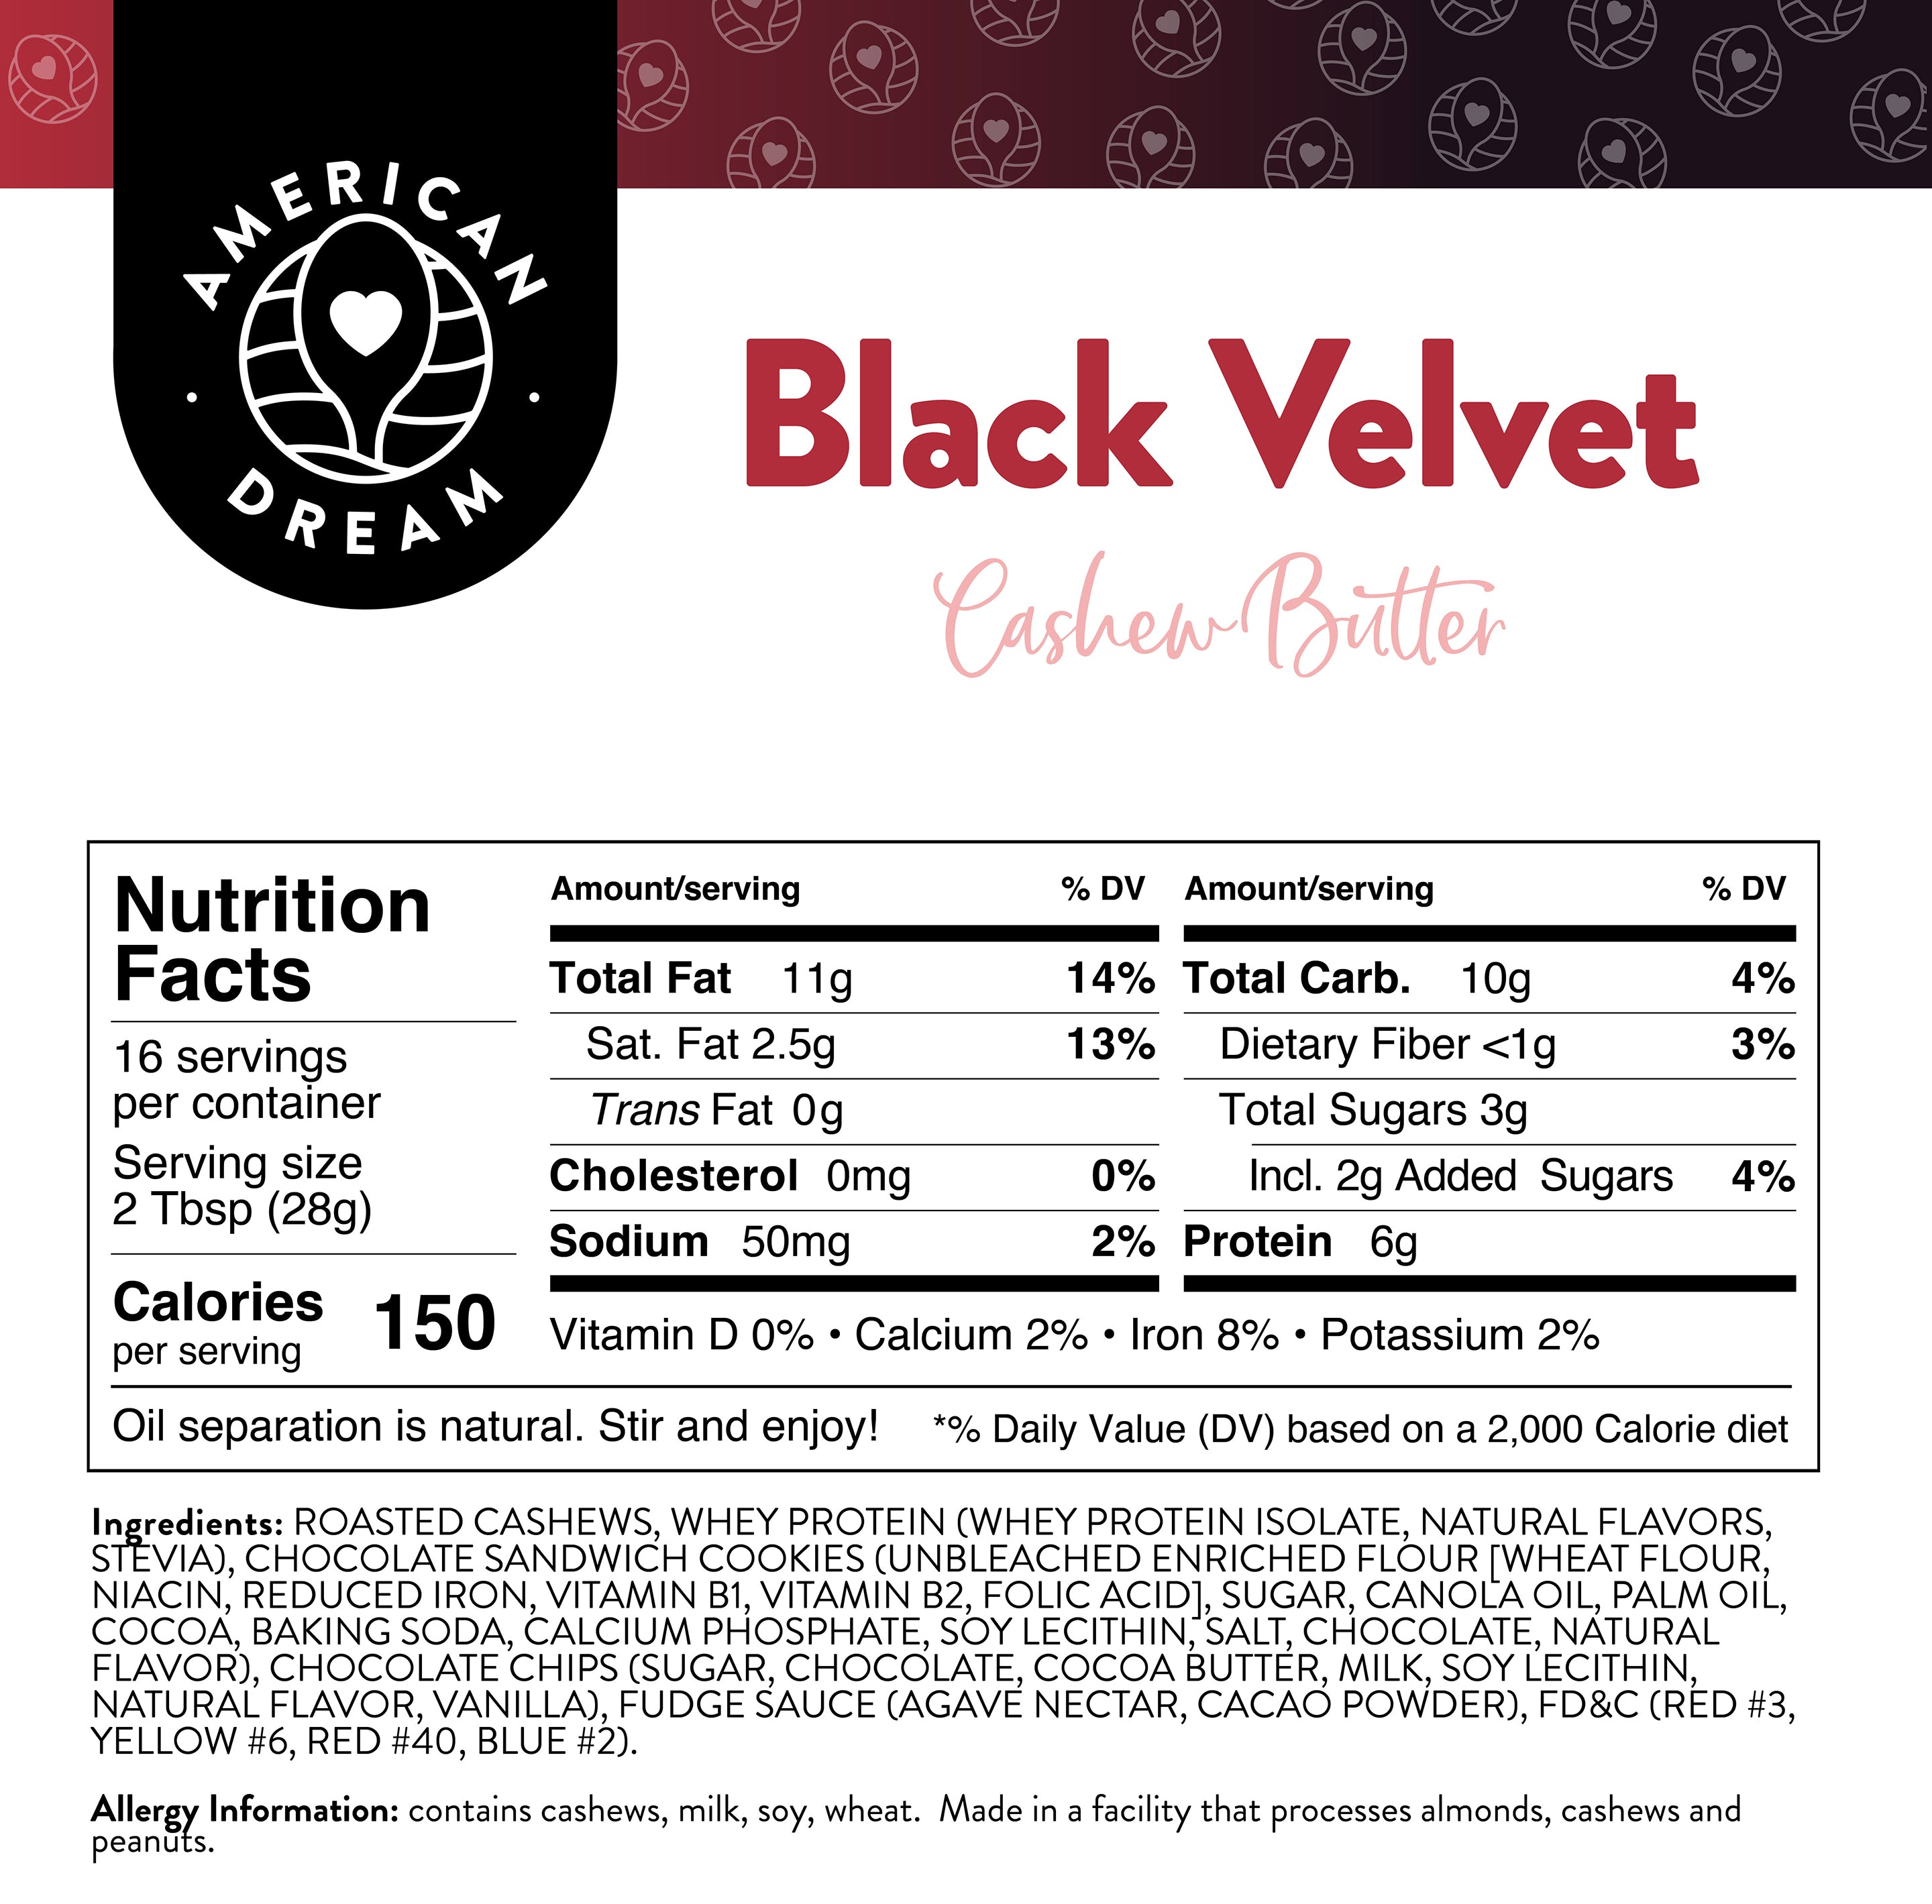 Black Velvet Cashew Butter